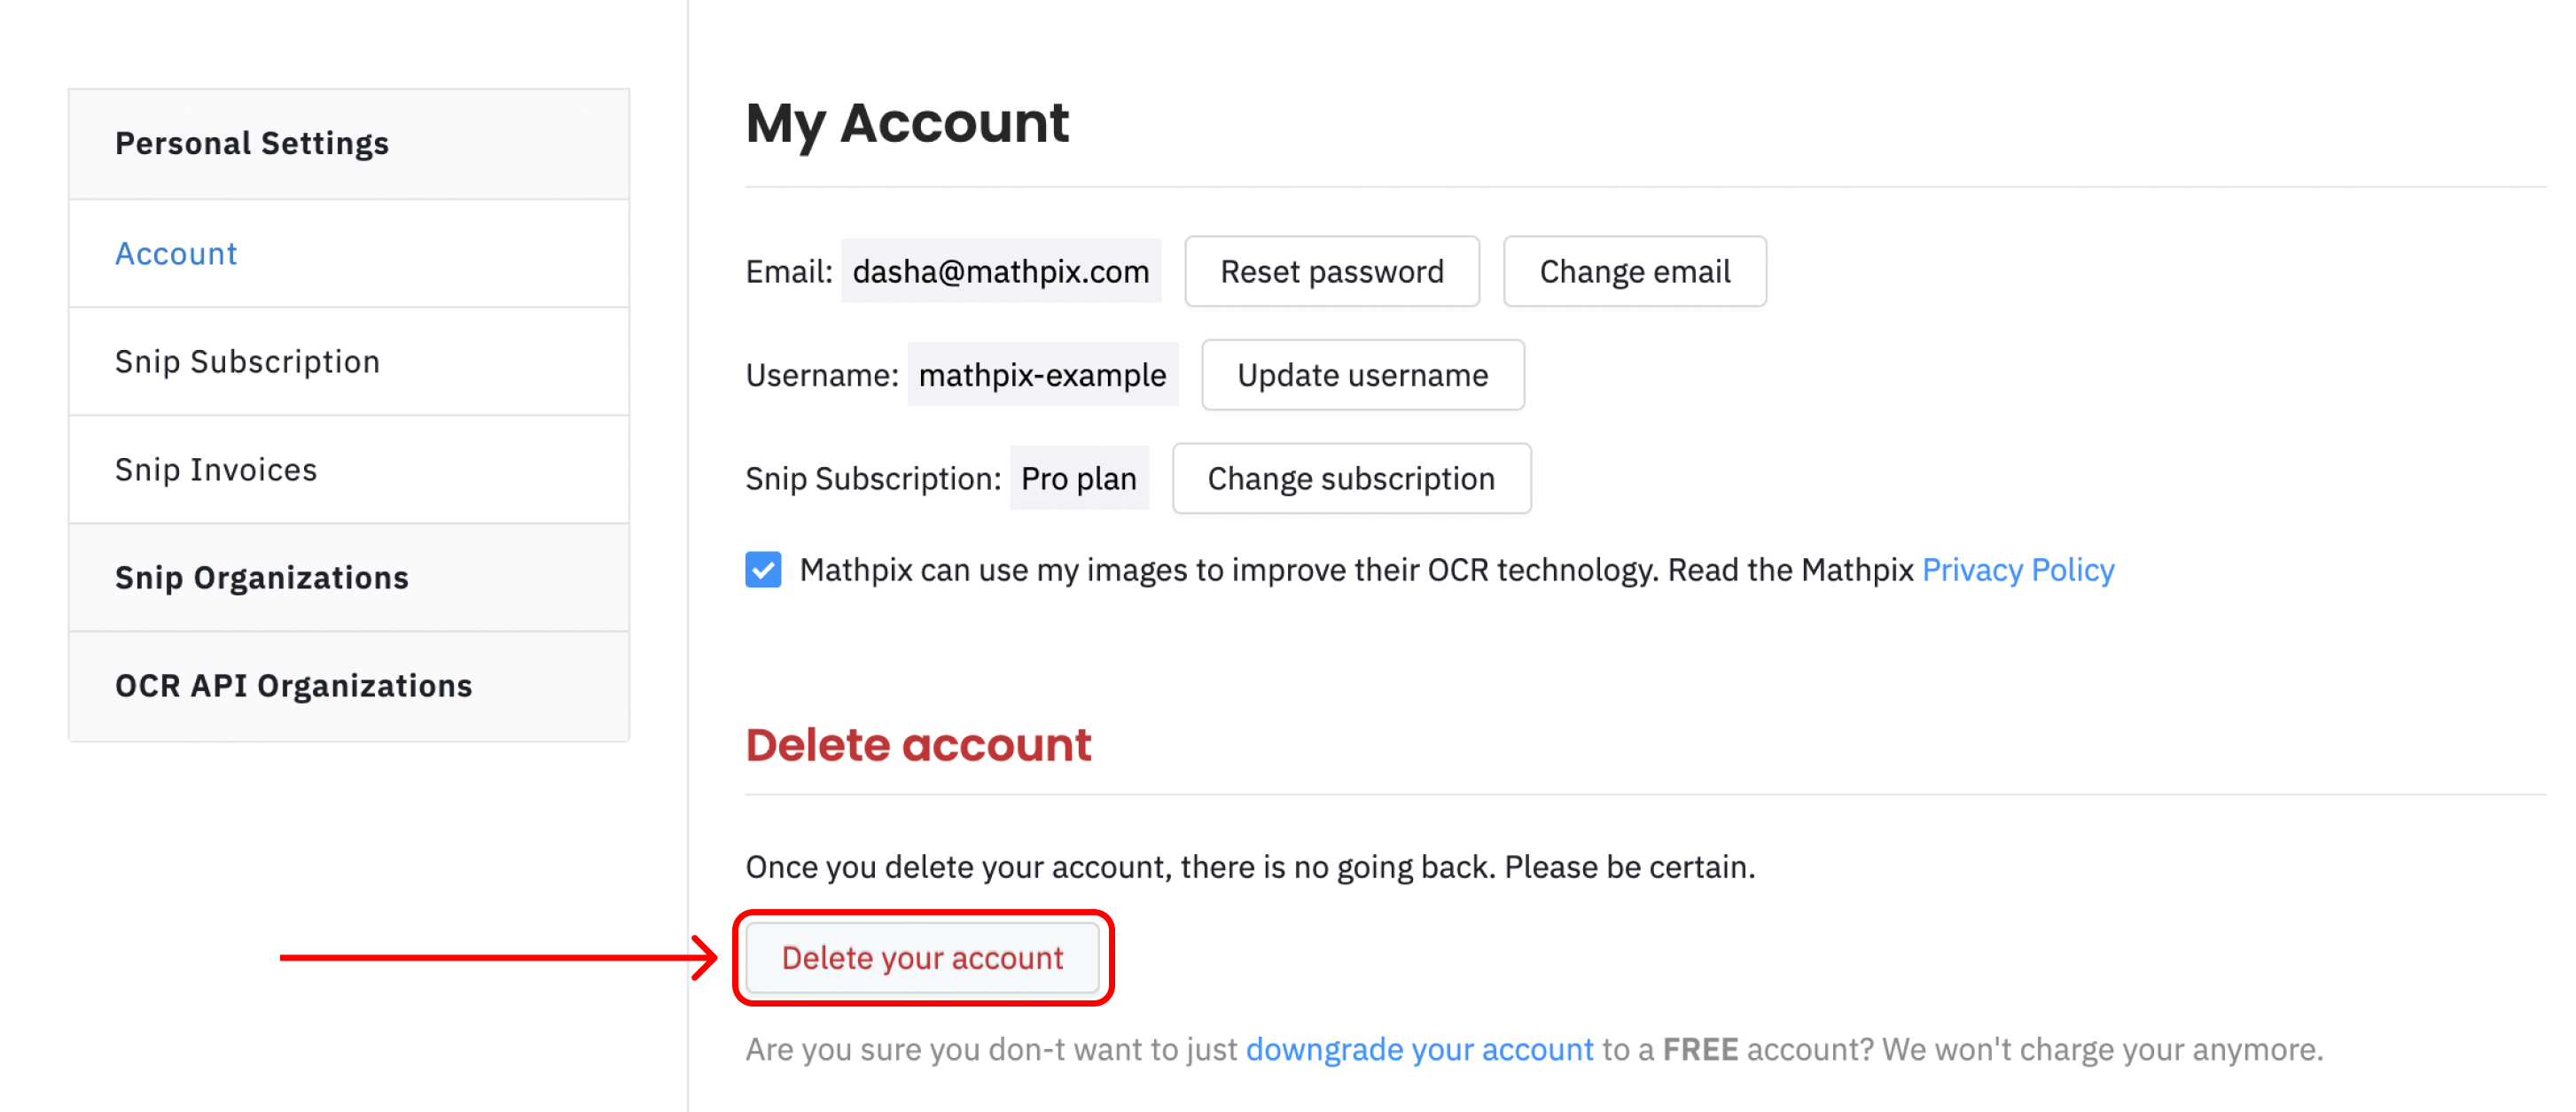 Delete account button